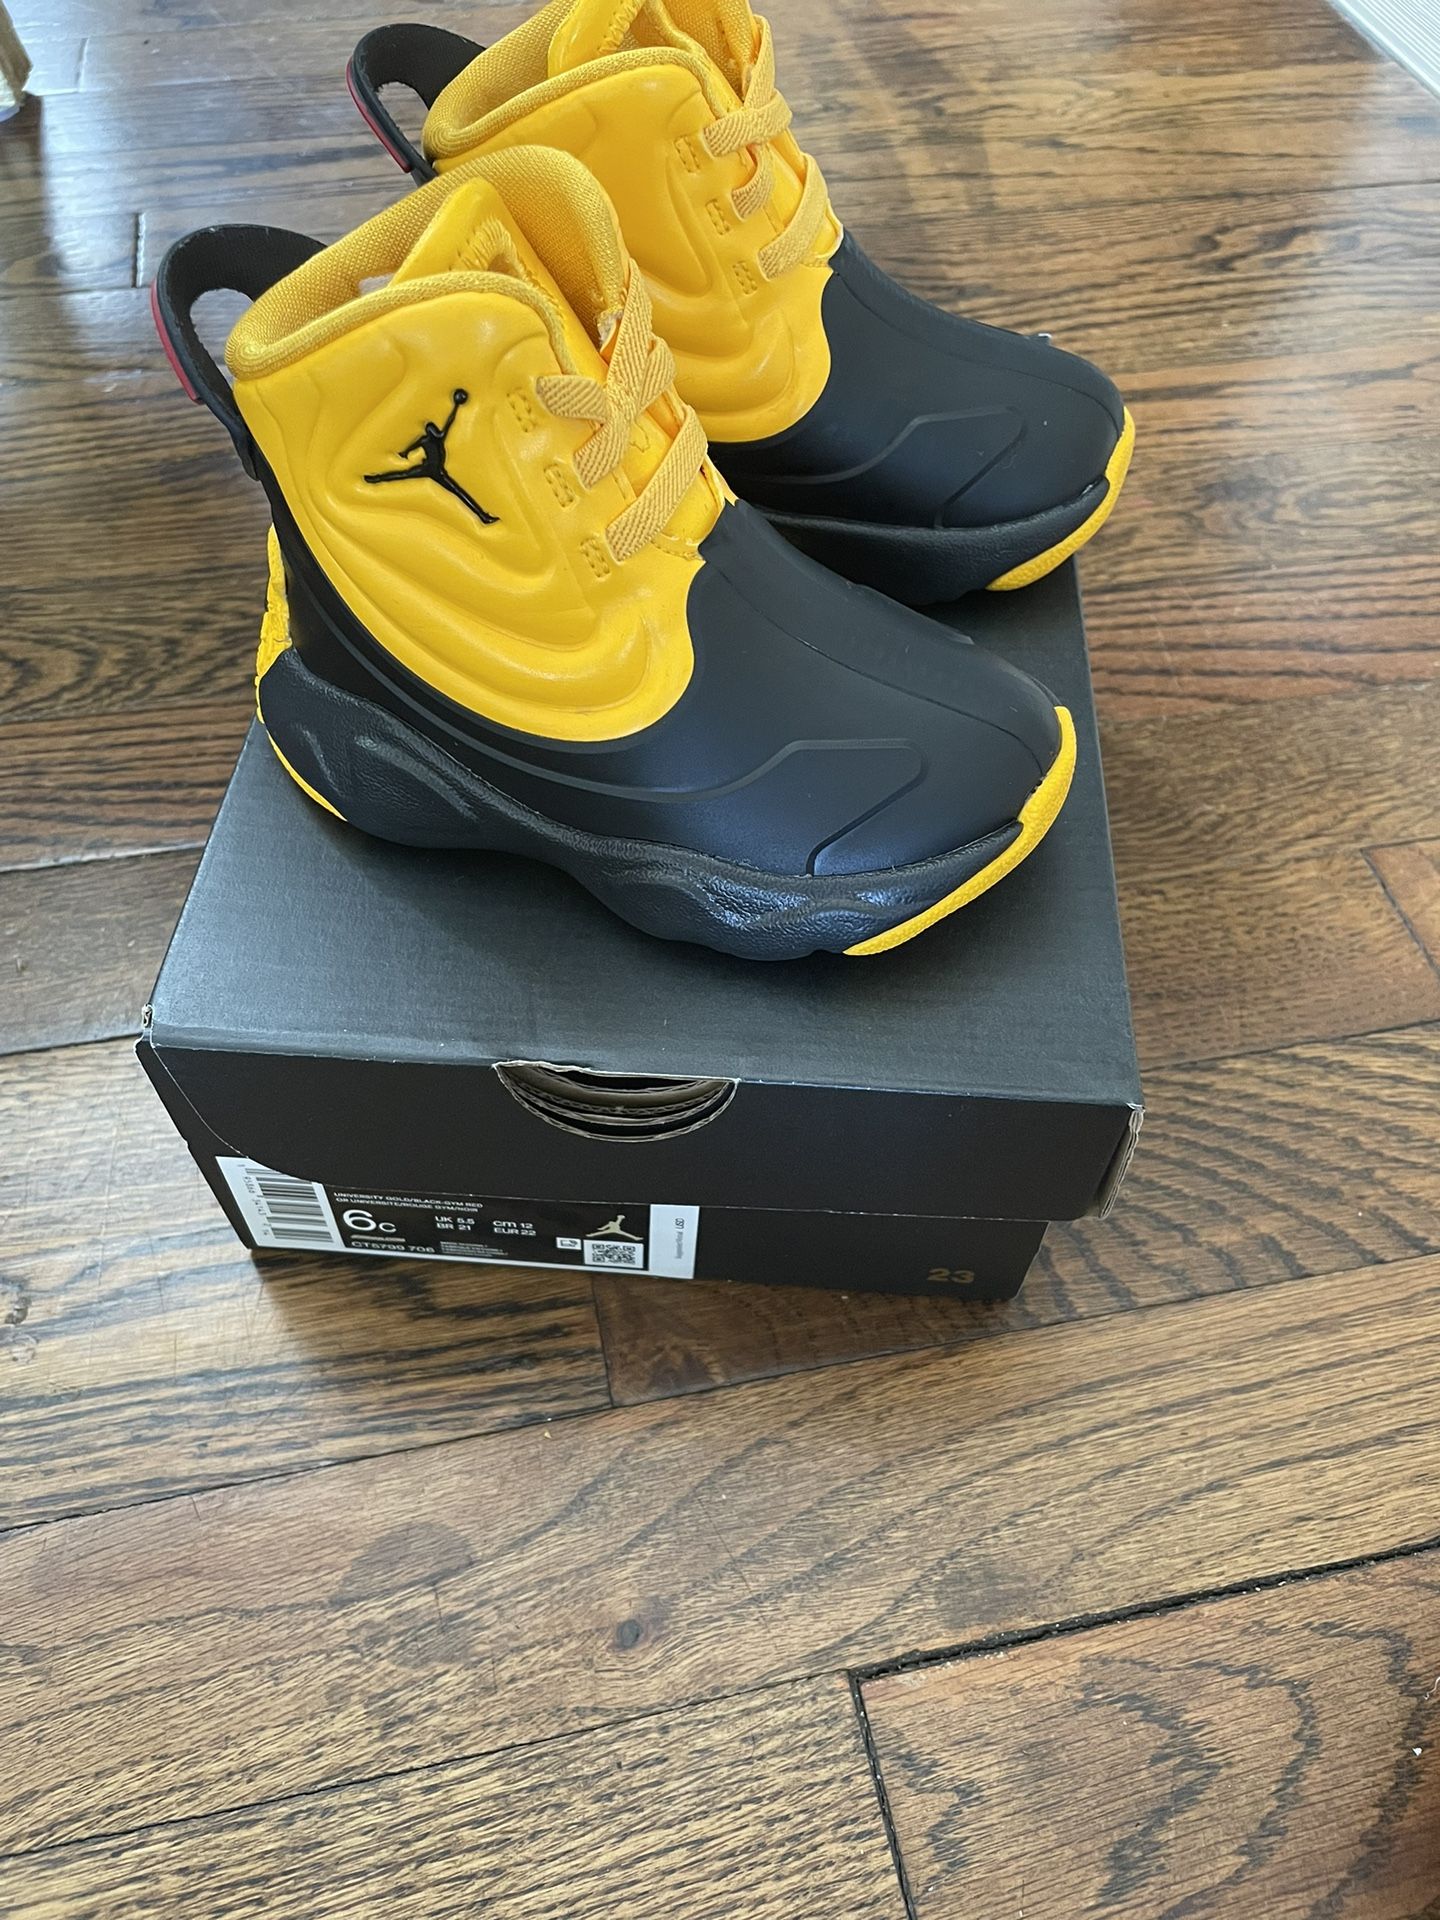 Air Jordan Rain Boots